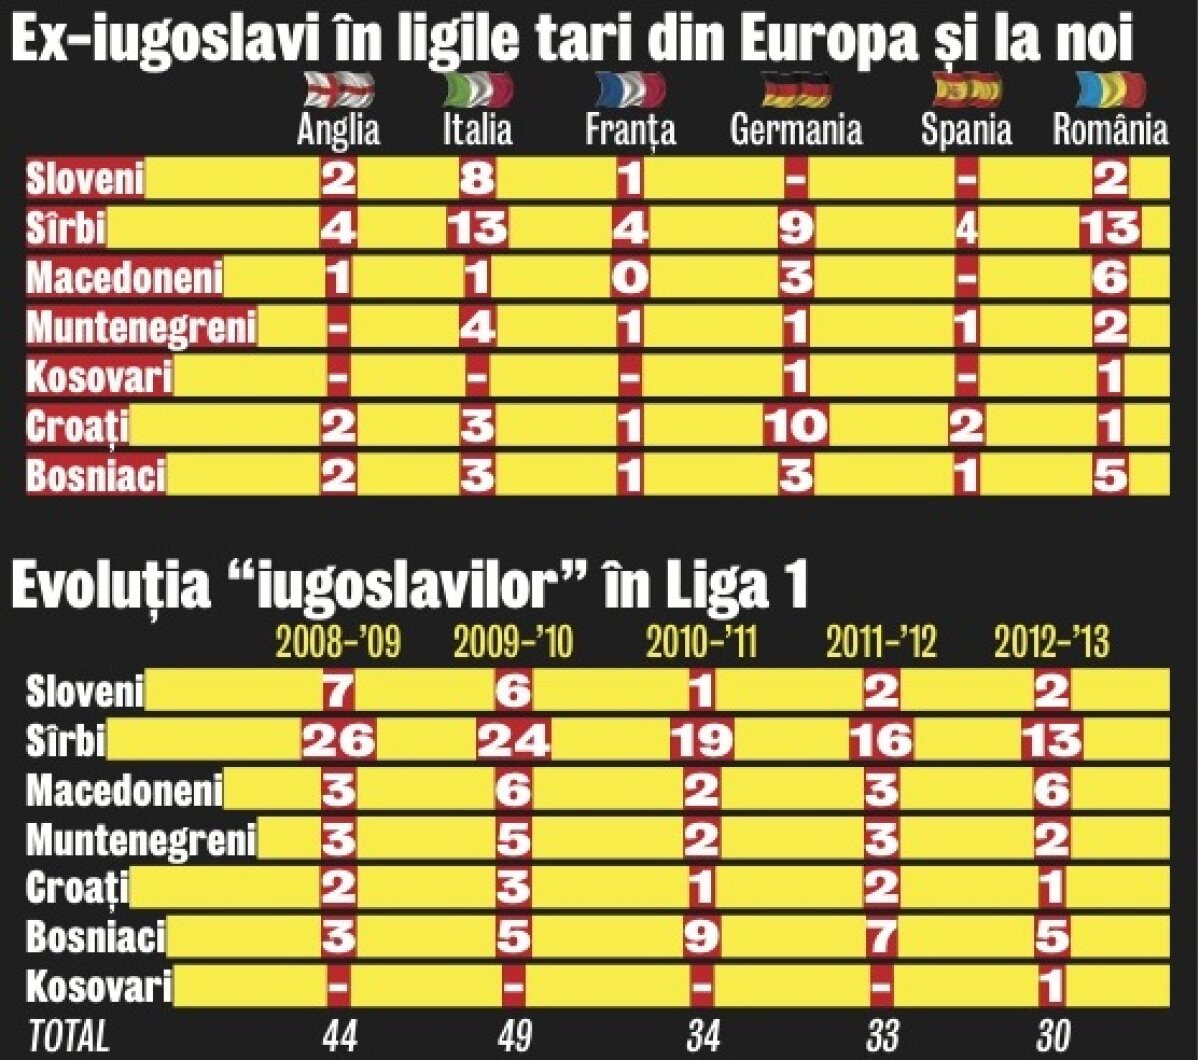 Coloşii de peste Dunăre » 30 de fotbalişti din cele 6 ţări ex-iugoslave plus Kosovo activează în Liga 1